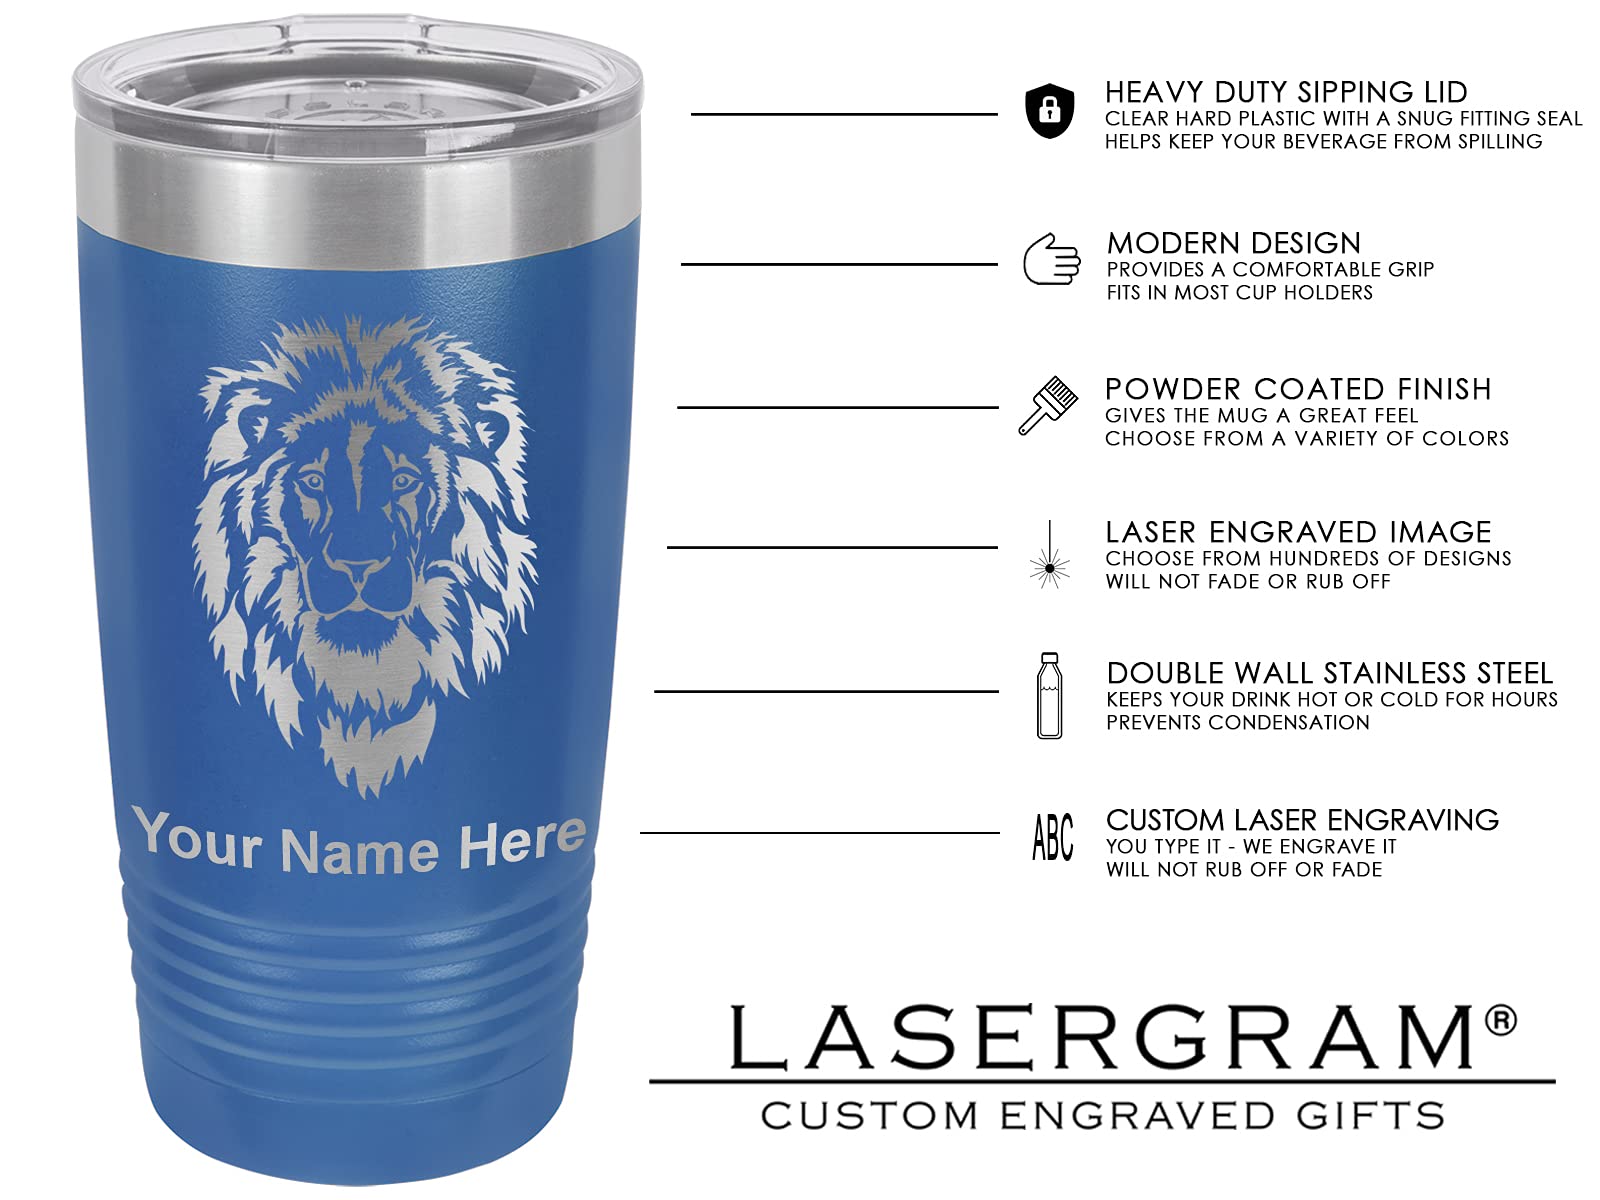 LaserGram 20oz Vacuum Insulated Tumbler Mug, Royal Flush Poker Cards, Personalized Engraving Included (Dark Blue)